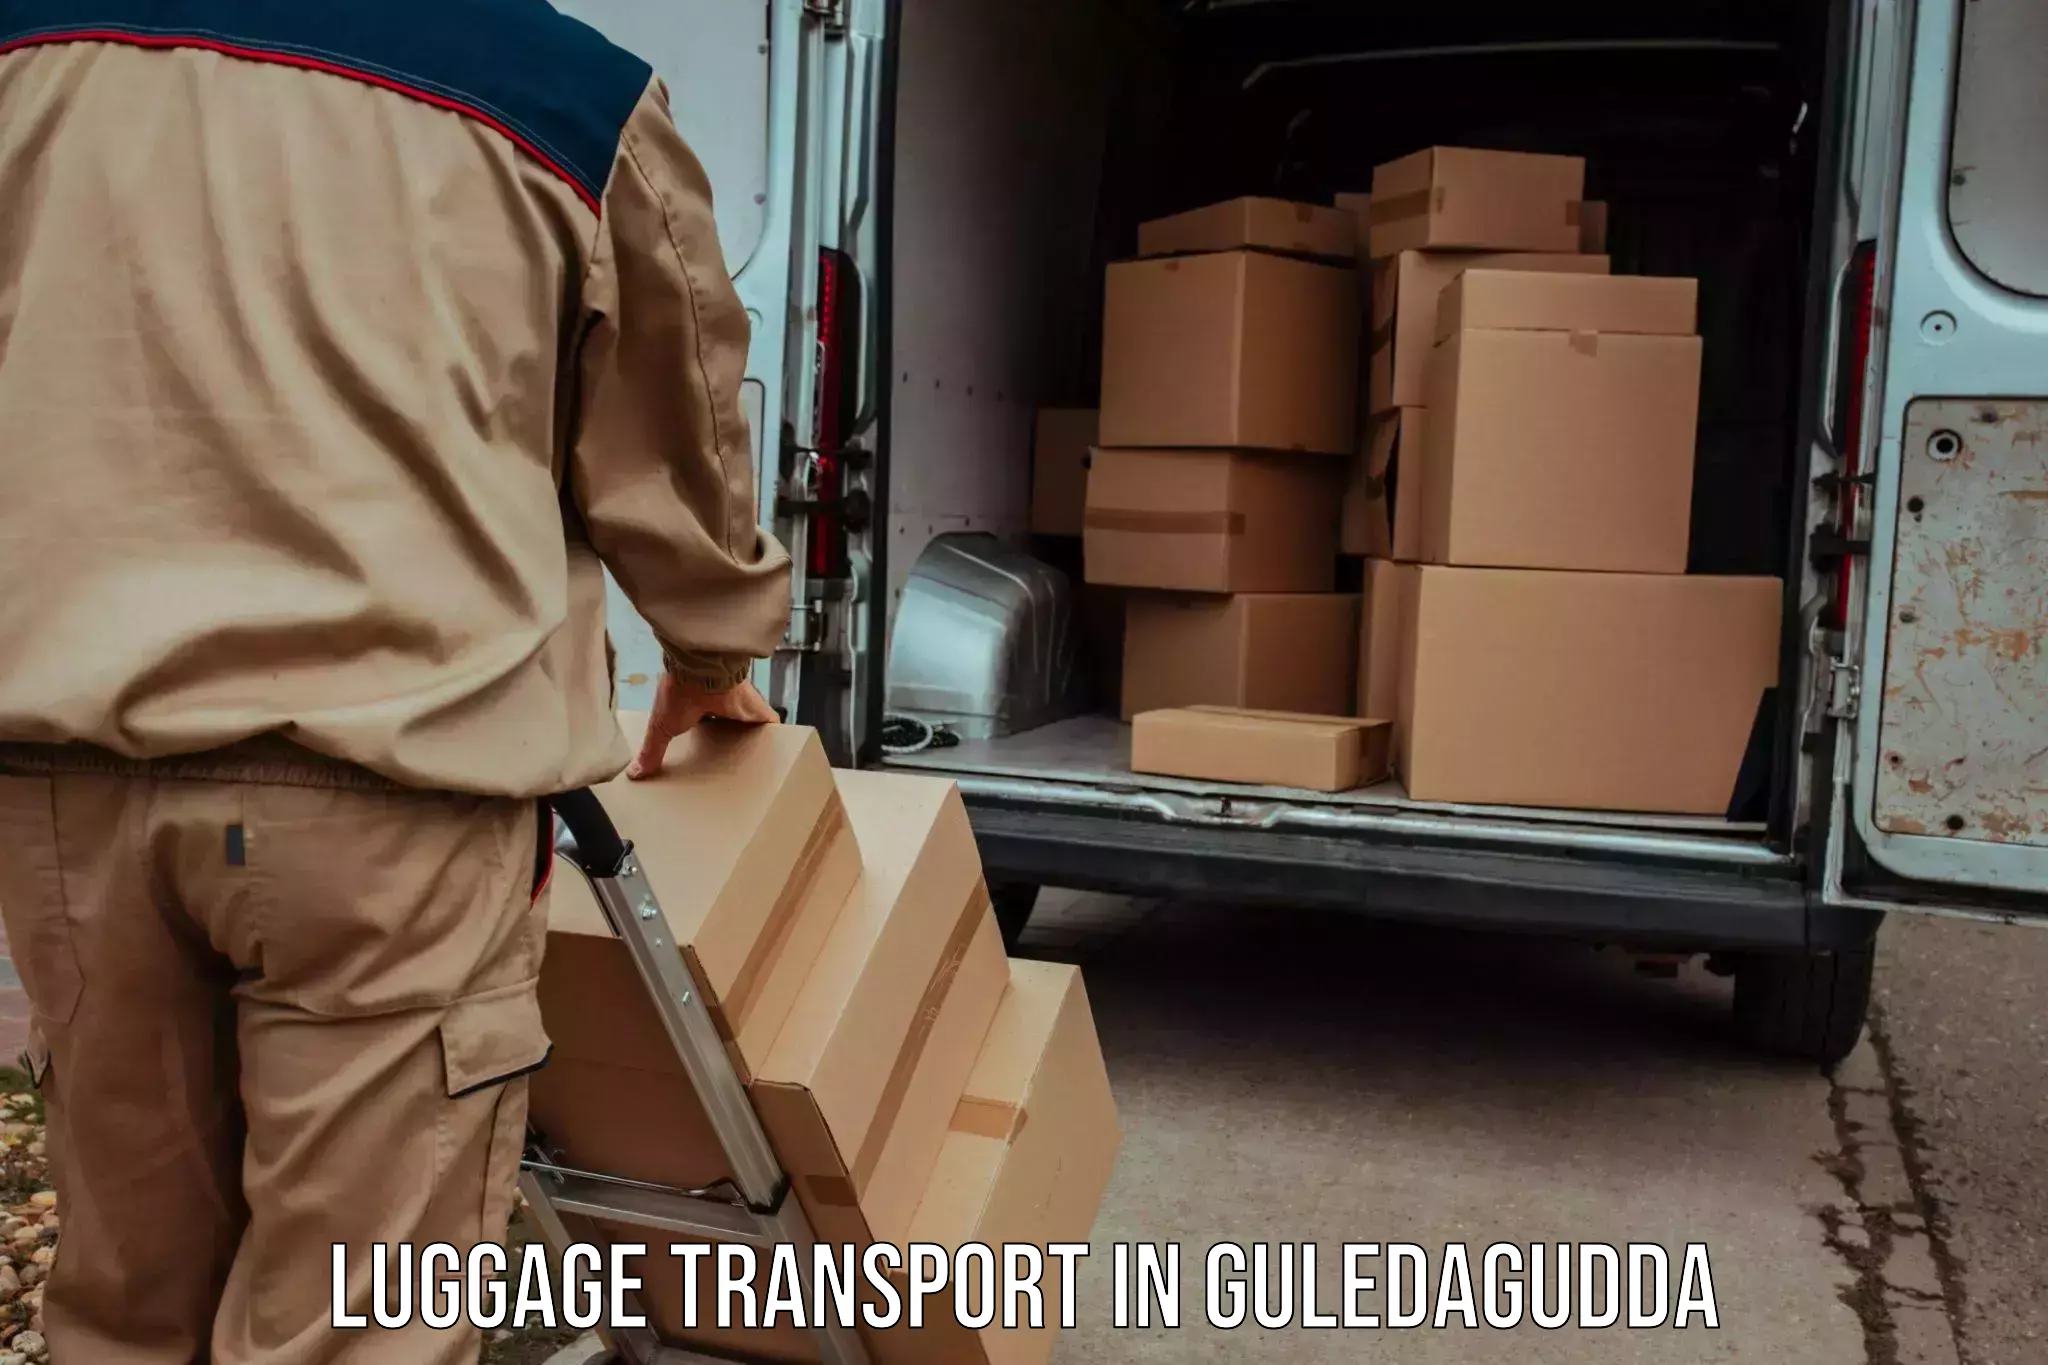 Baggage transport scheduler in Guledagudda